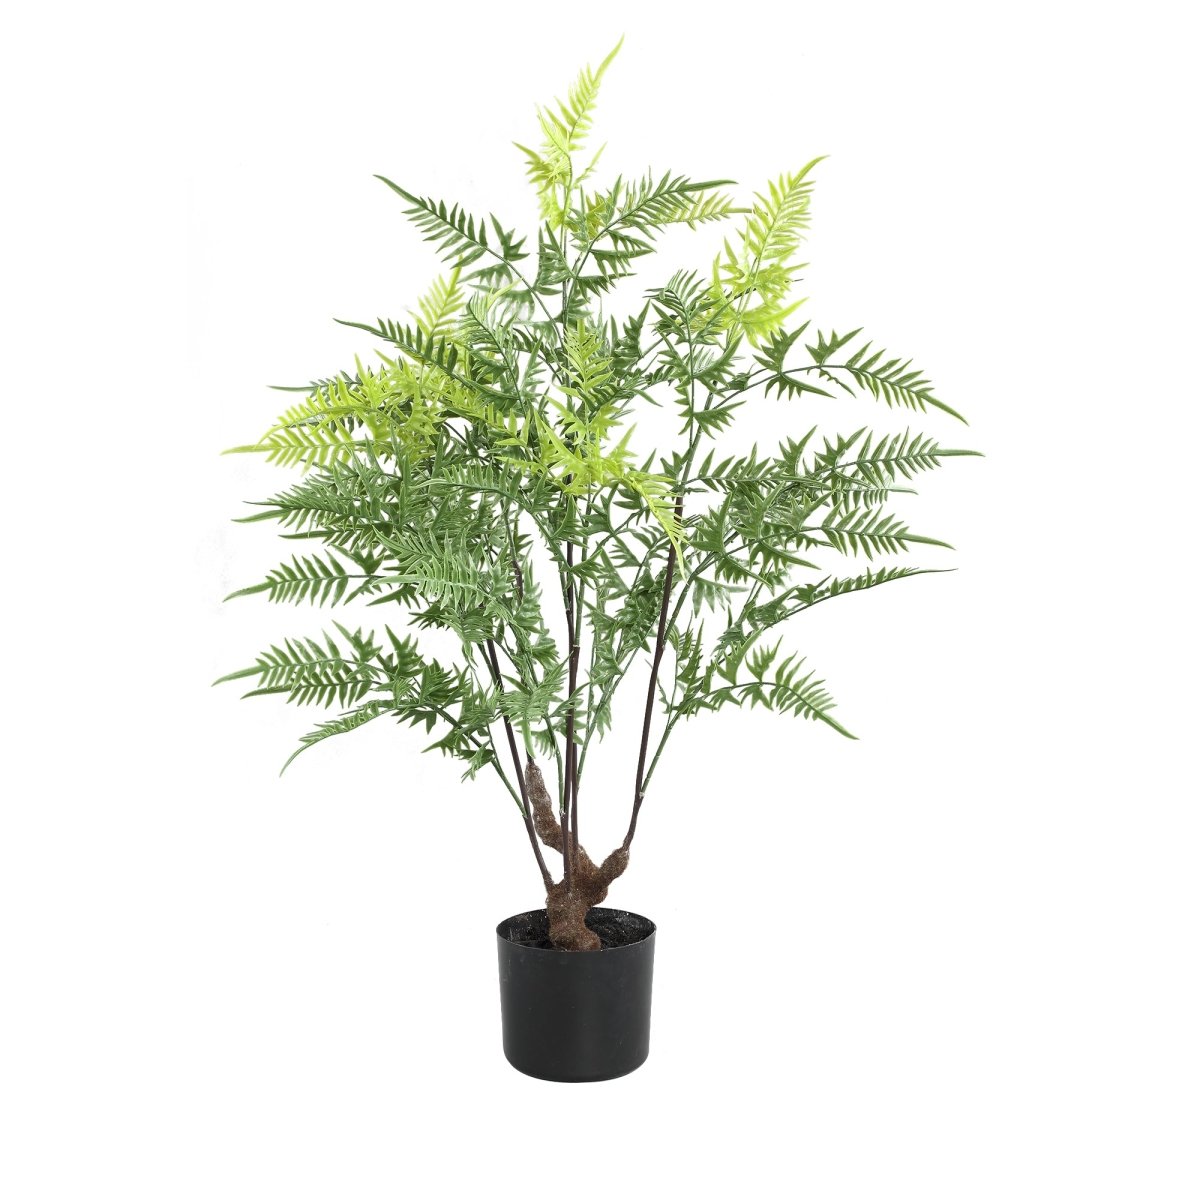 Kunstpflanze - Tree Green horsetail fern in black pot - Esszett Luxury